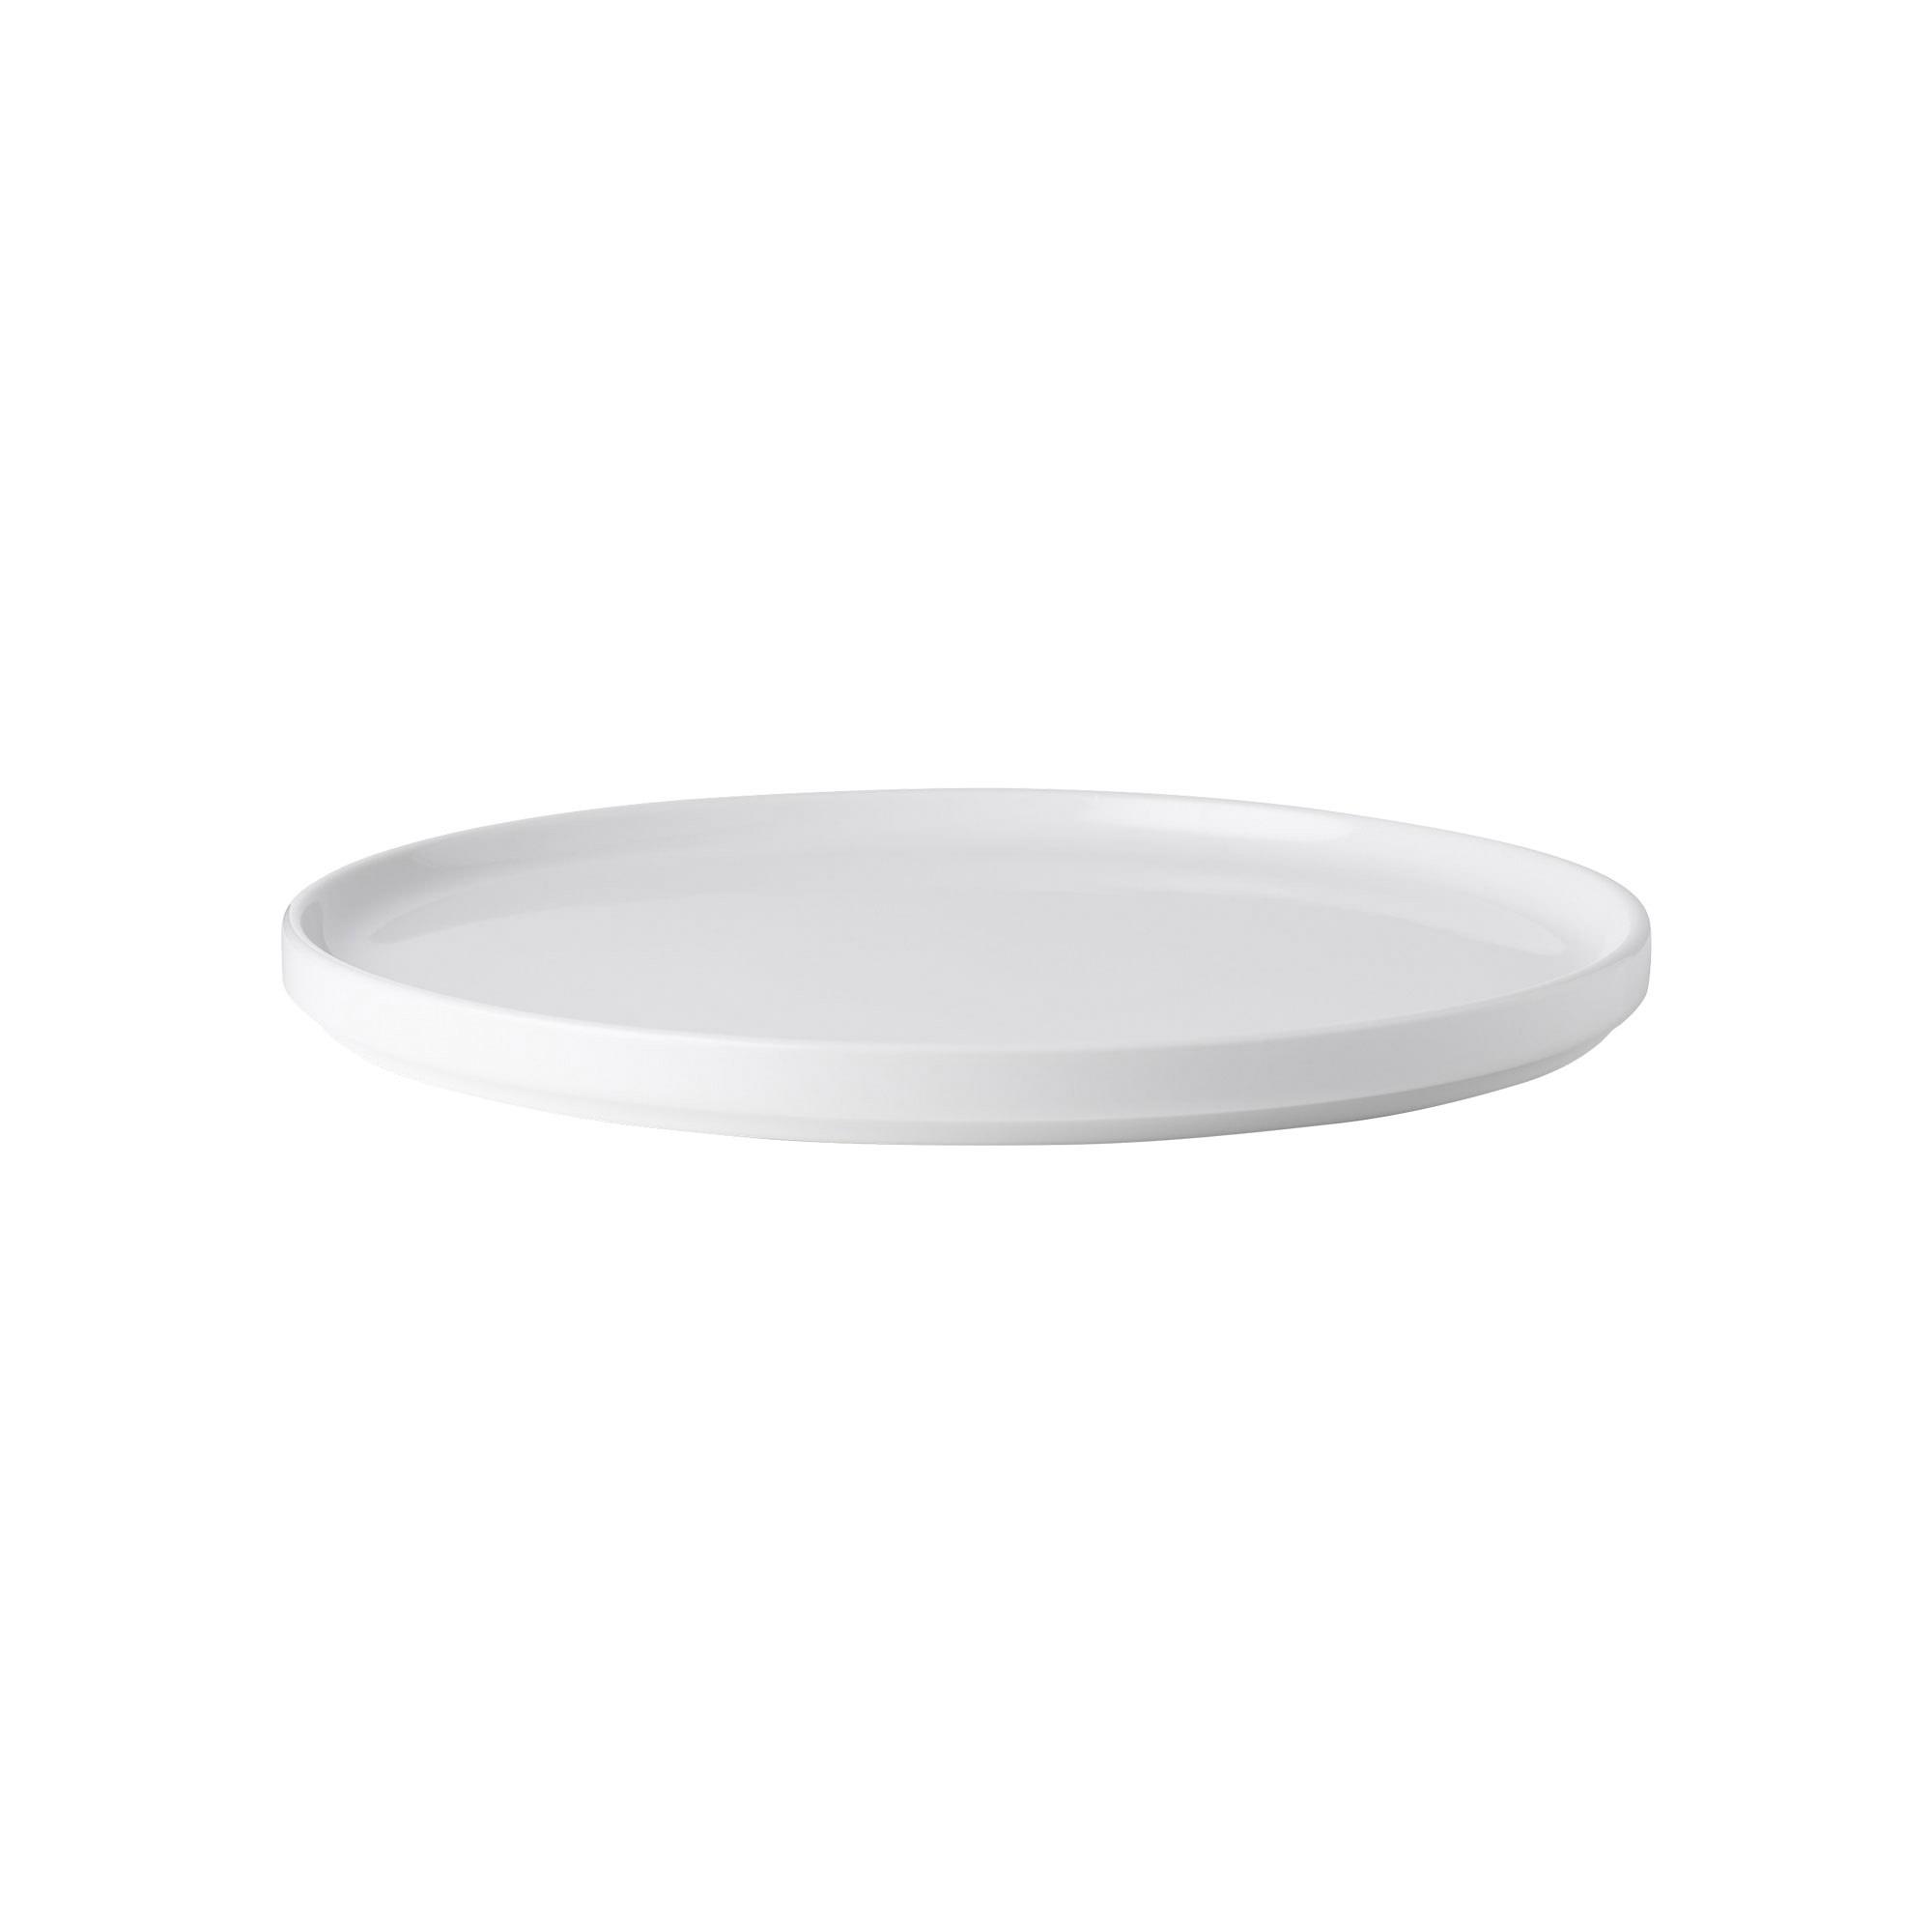 Noritake Stax White Serving Platter 29cm Image 1